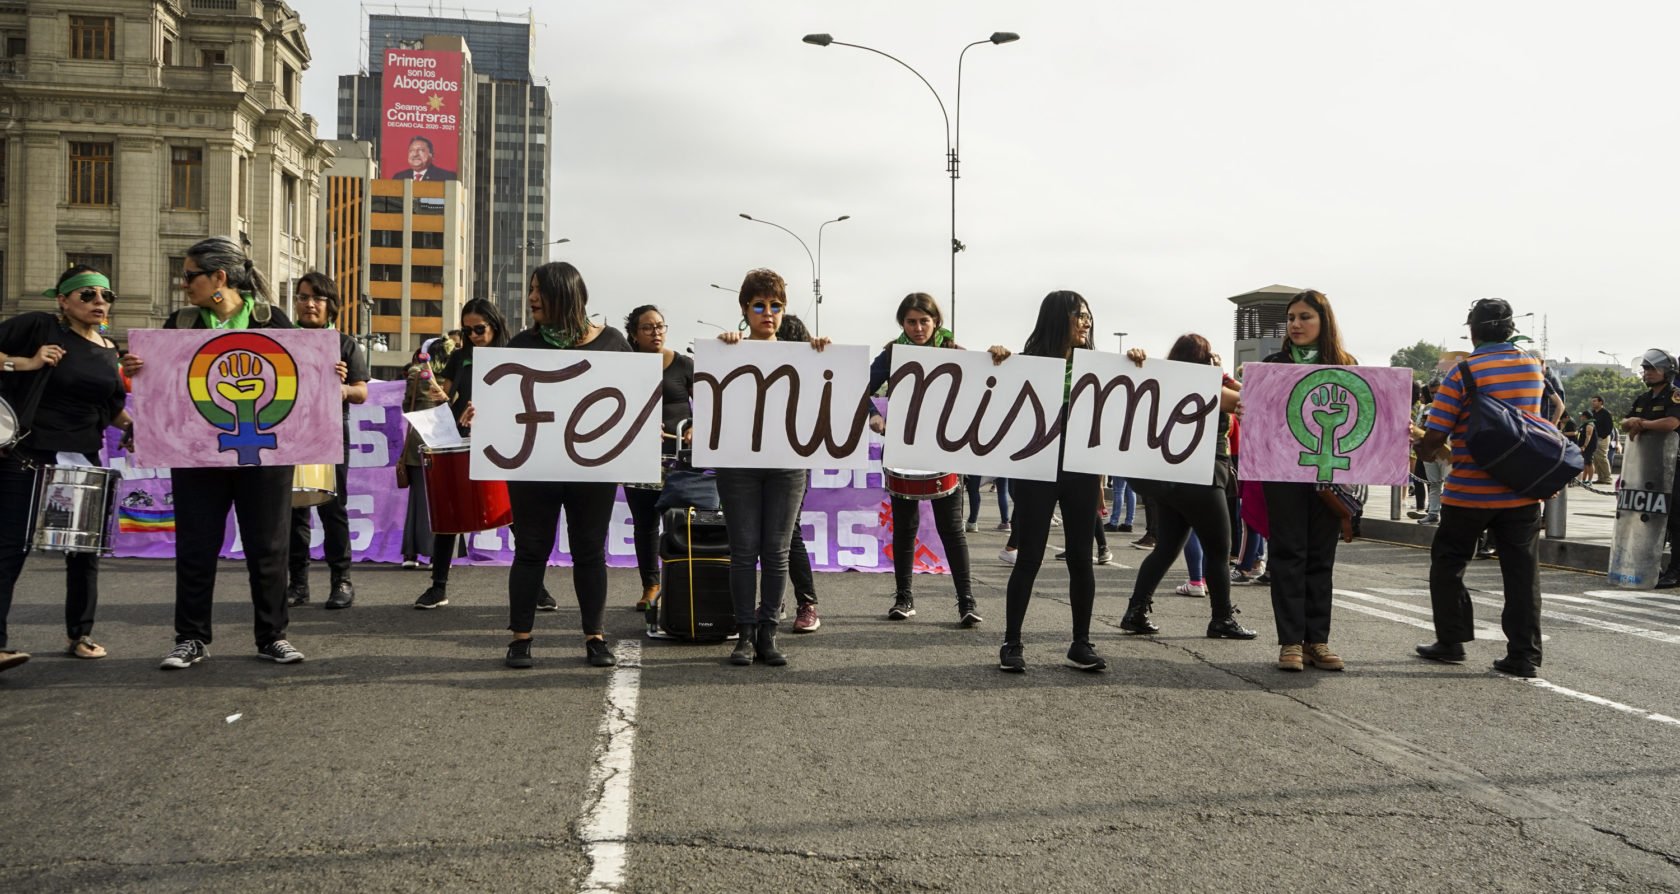 Feministische netwerken creëren veilige toegang tot abortus